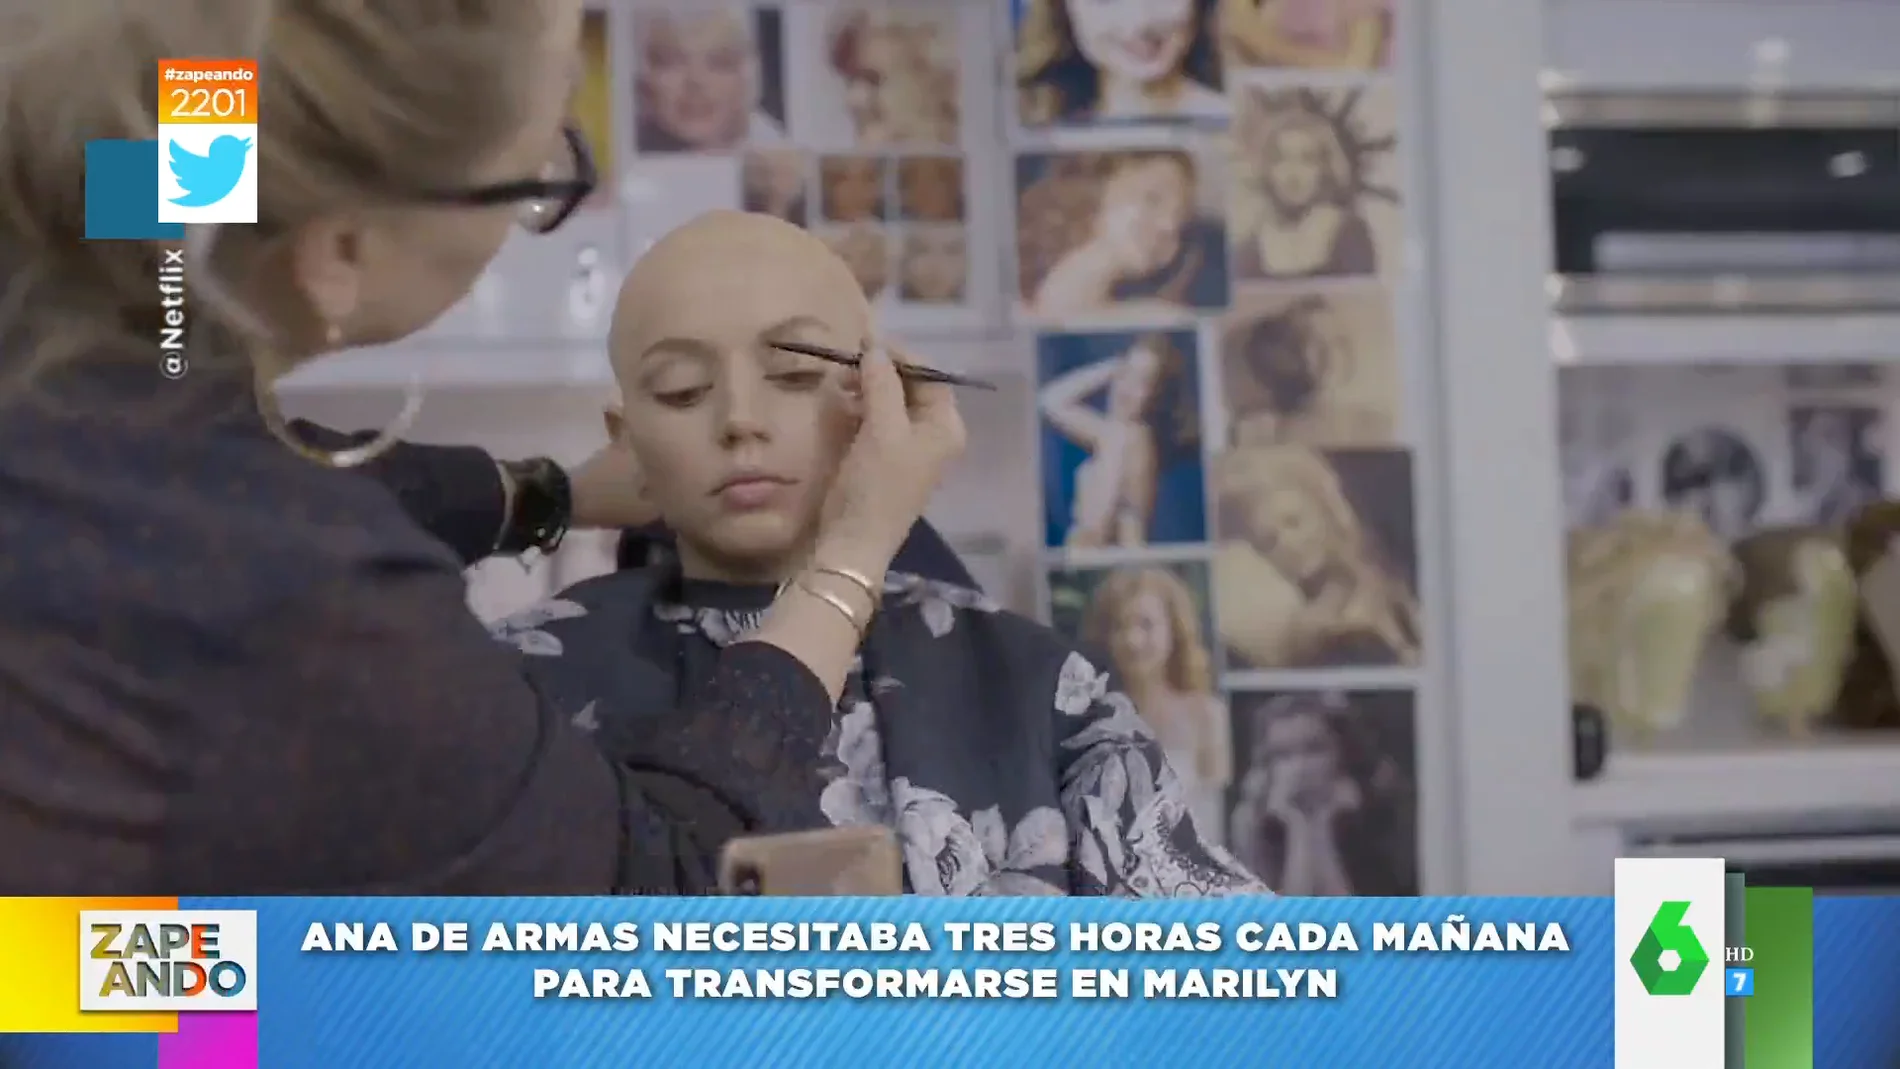 El impactante vídeo en el que Ana de Armas se transforma en Marilyn Monreo que ha conquistado al mundo